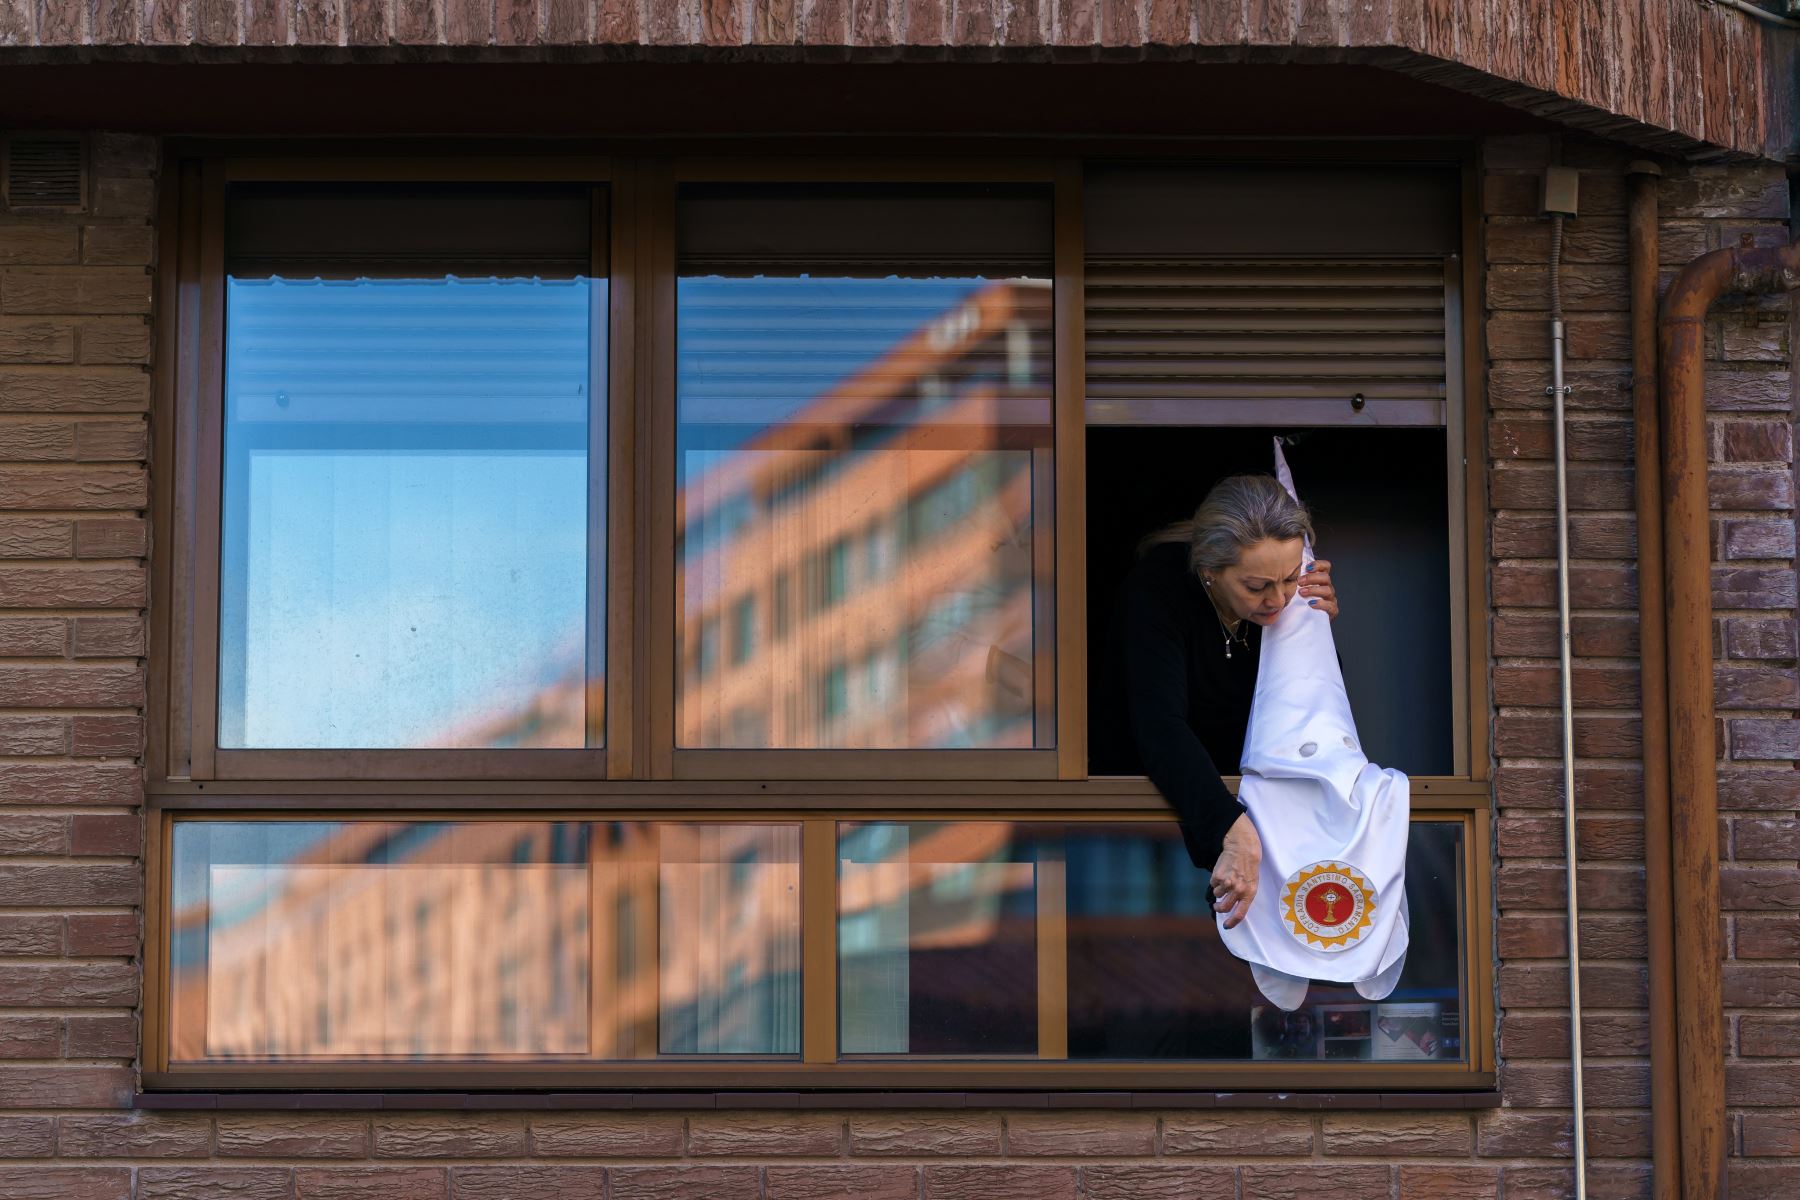 Una mujer coloca una capucha penitente de la hermandad "San Cosme y San Damián" en la ventana en Burgos, ya que las procesiones de Semana Santa fueron canceladas  para evitar la propagación de la enfermedad COVID-19.
Foto: AFP